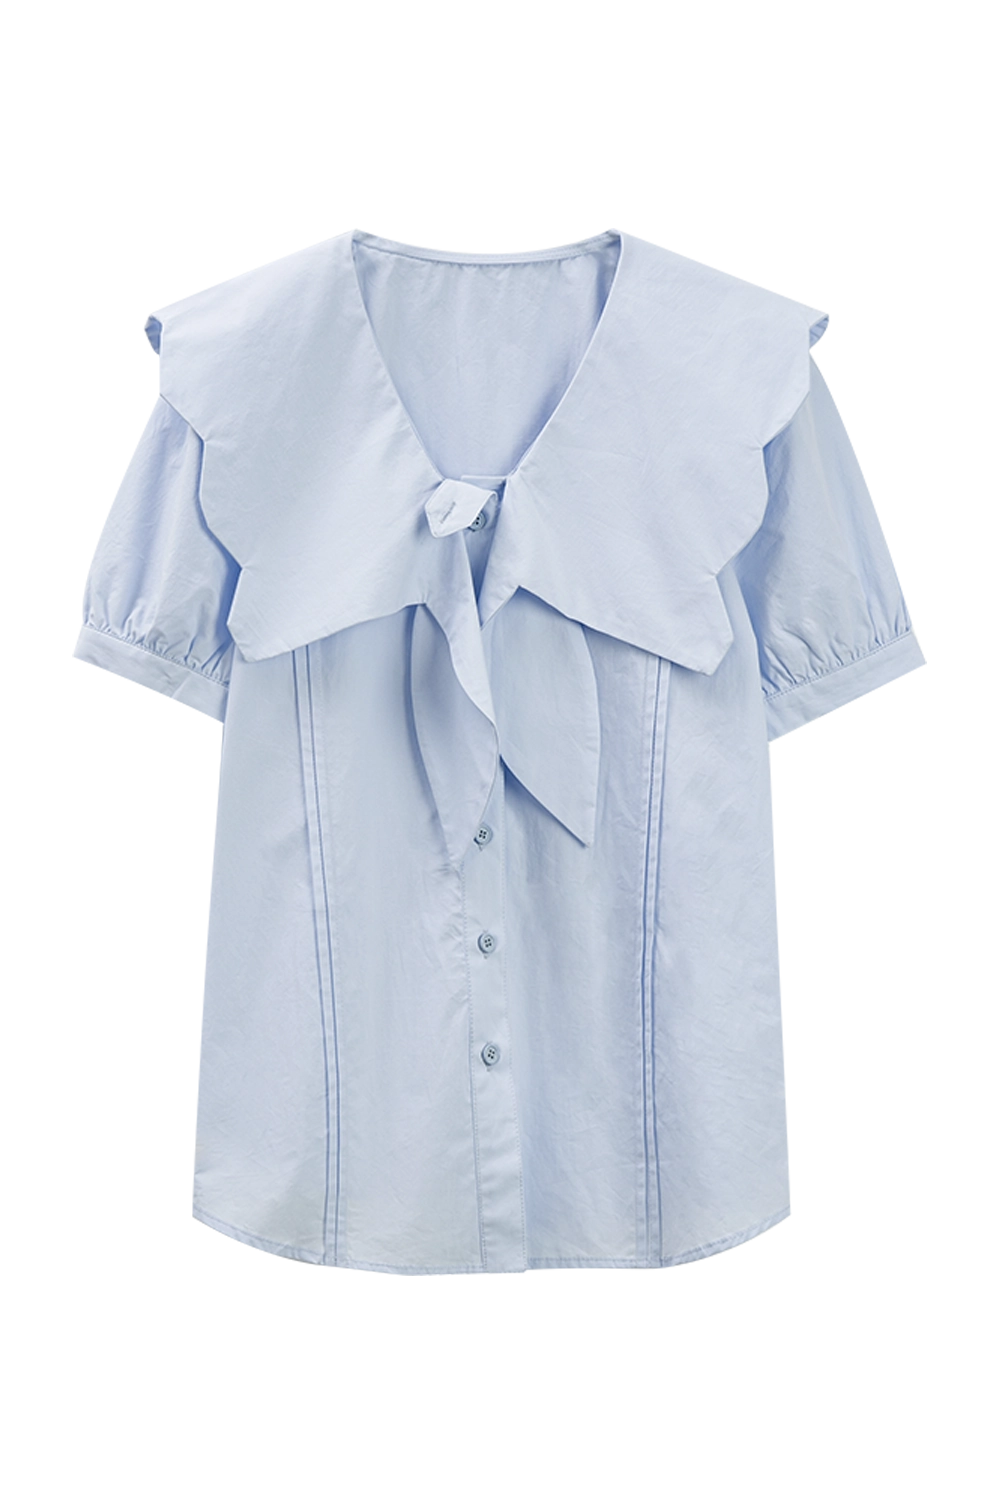 Women's Light Blue Tie-Front Short Sleeve Shirt